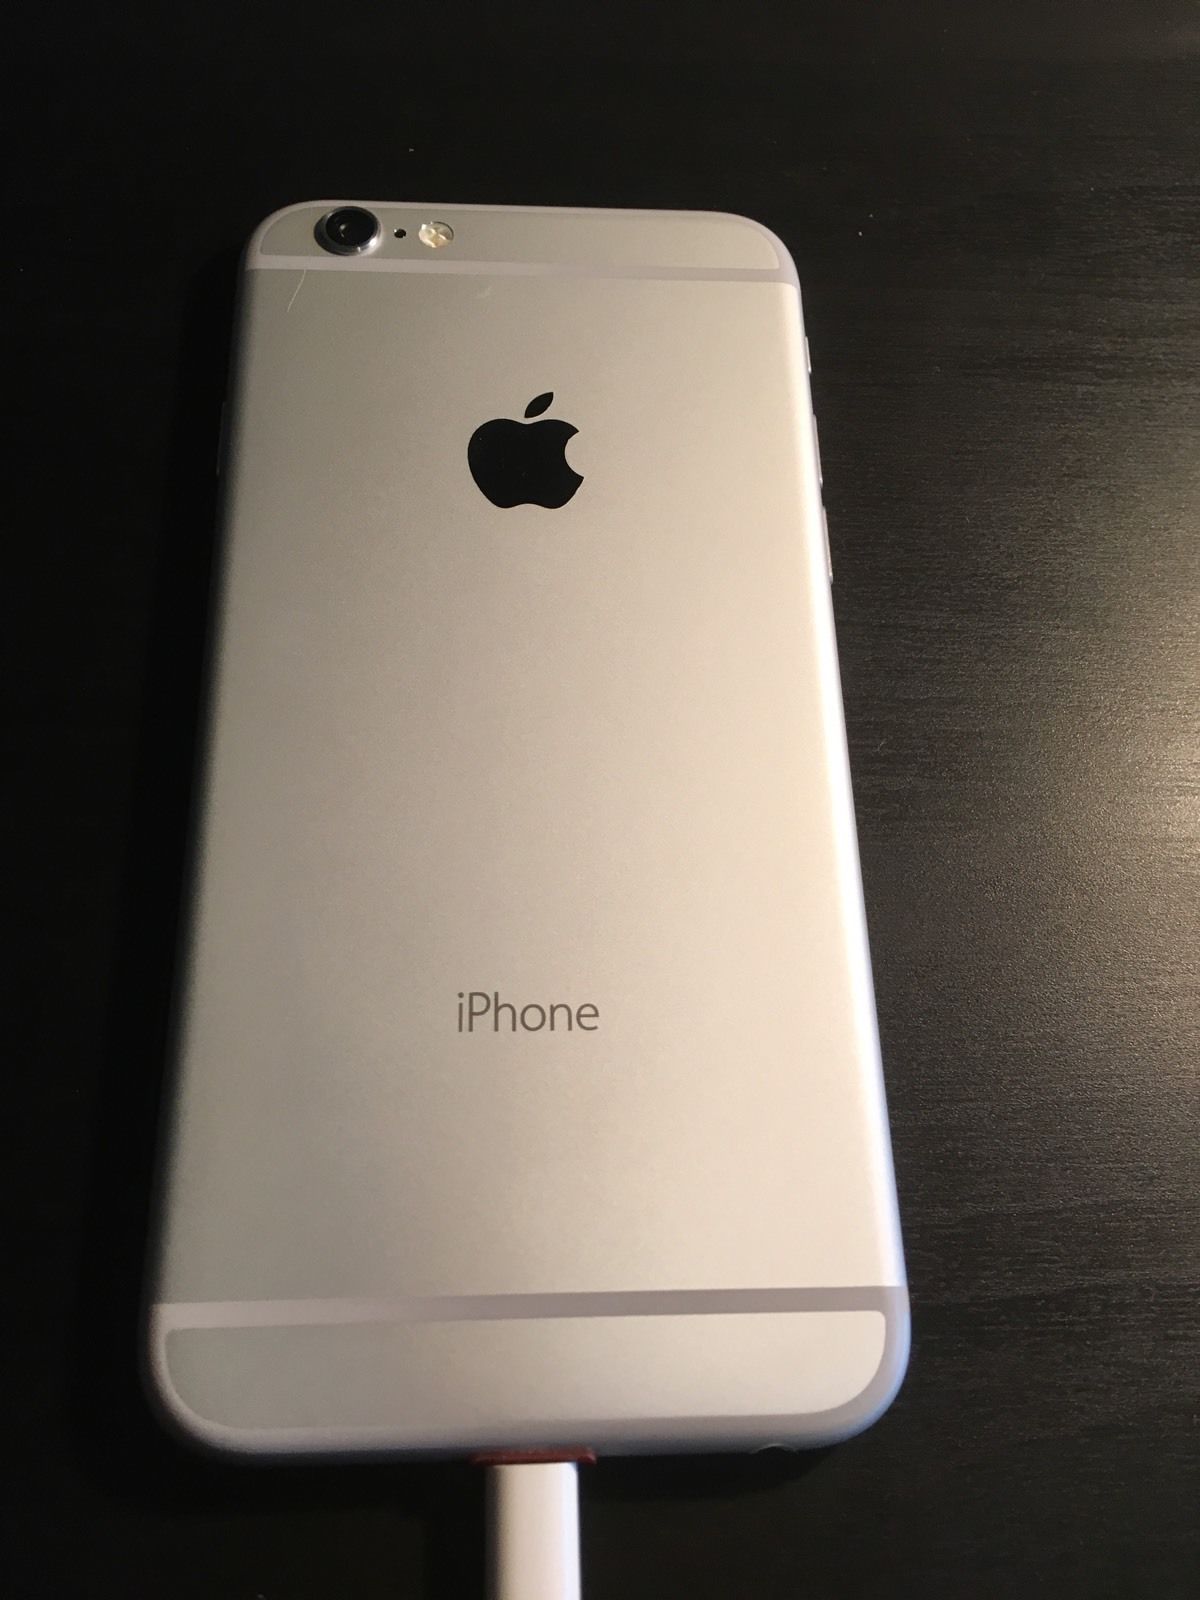 iPhone 6 prototype 1